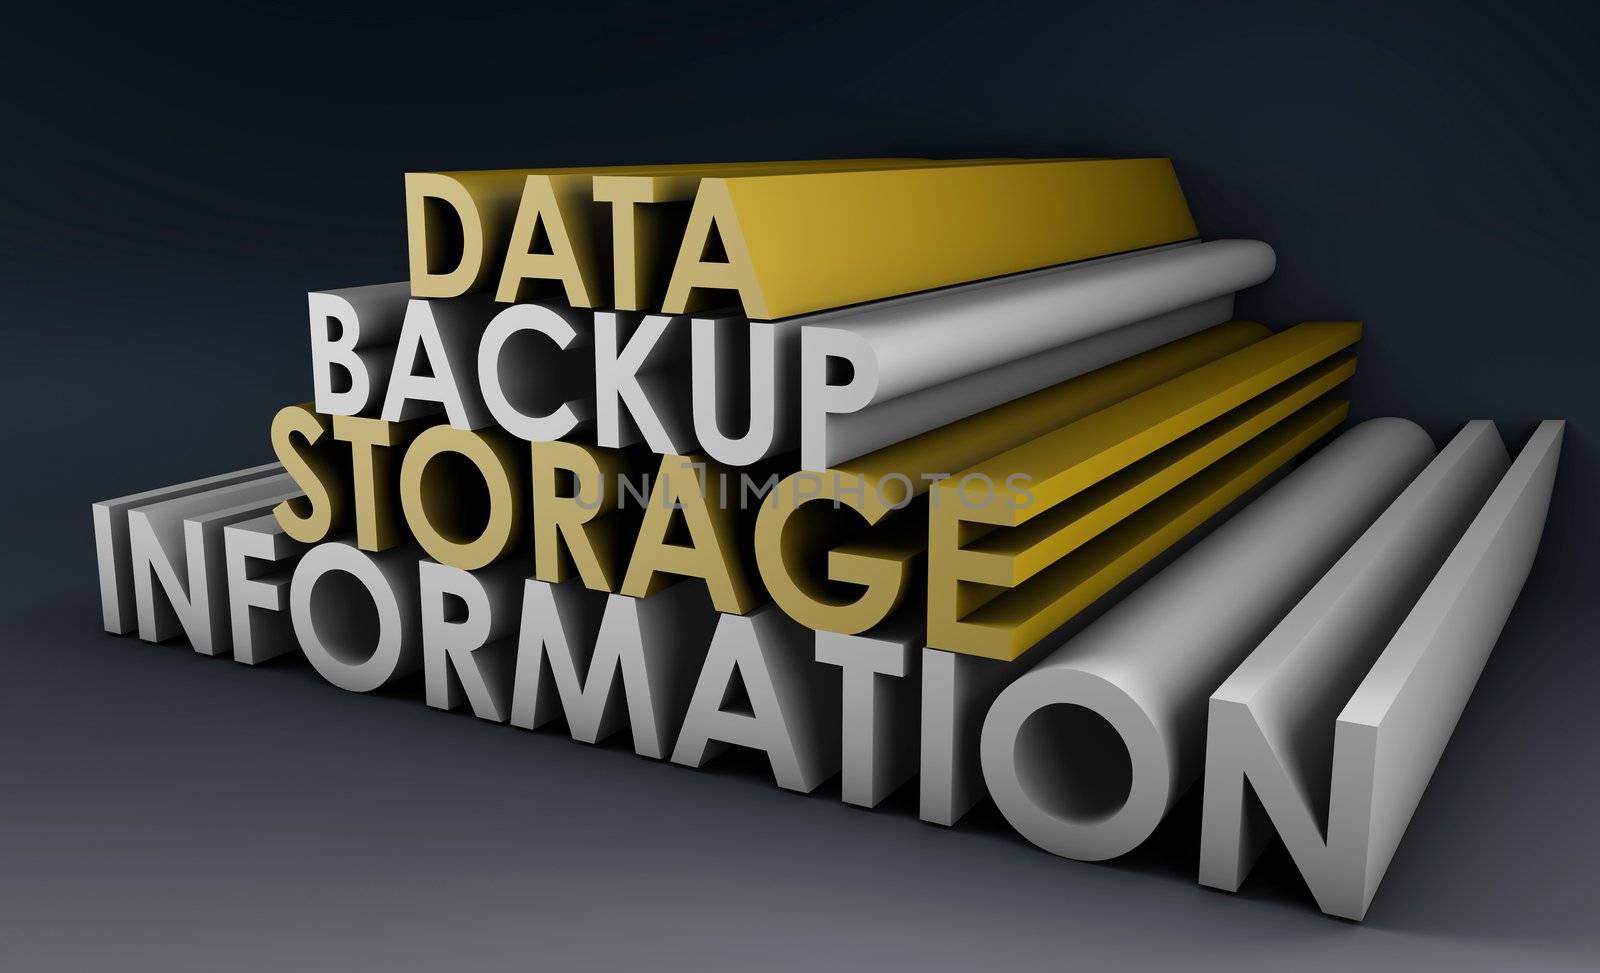 Data Backup Information in 3d Art Sign